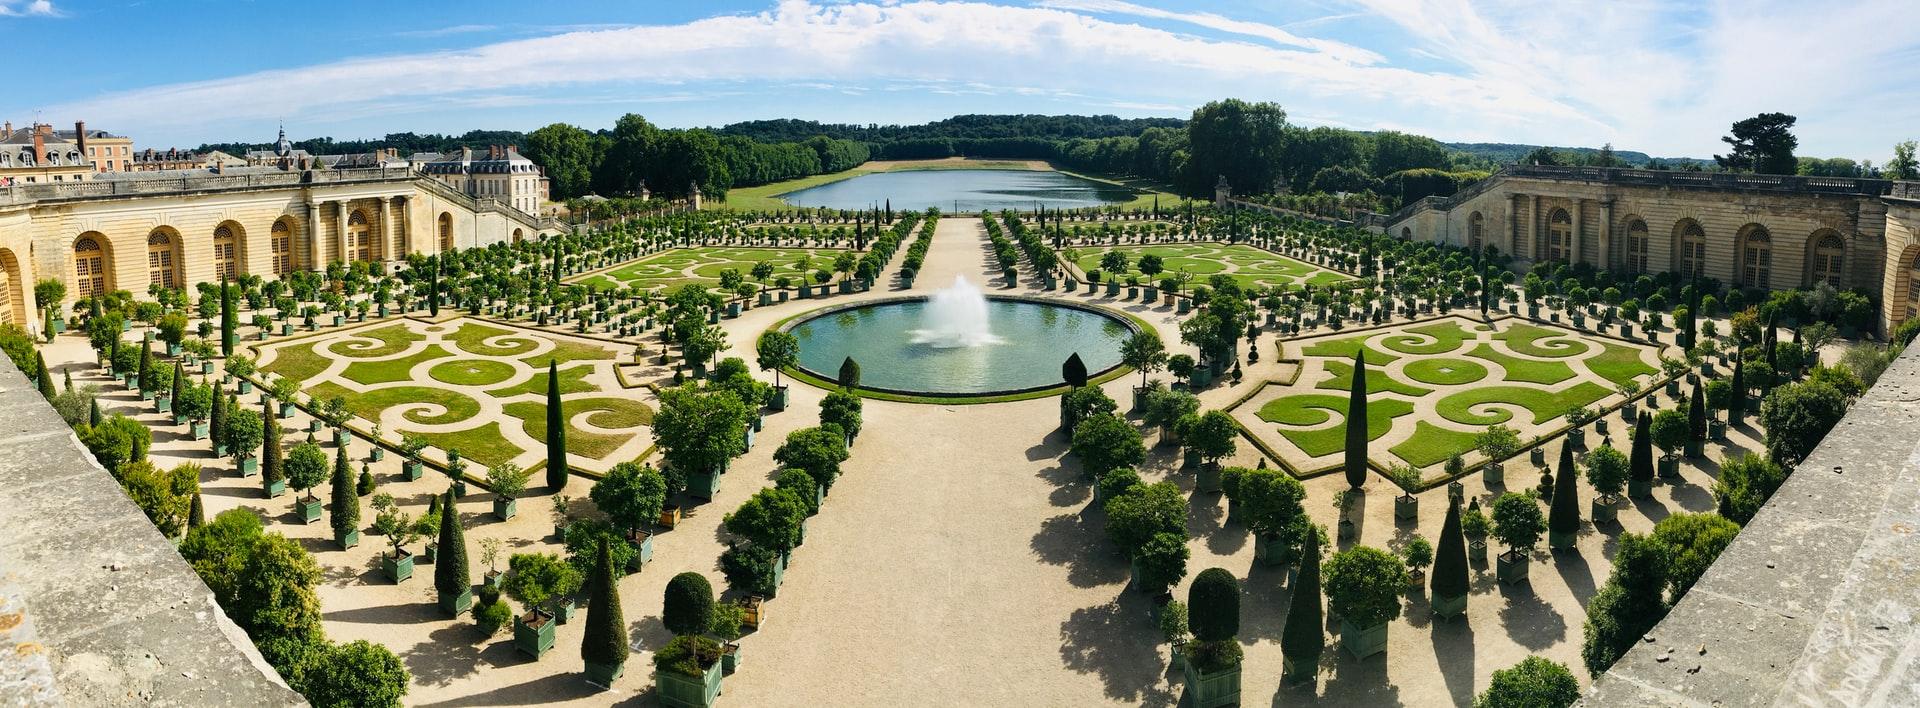 Le magnifique programme estival du Château de Versailles